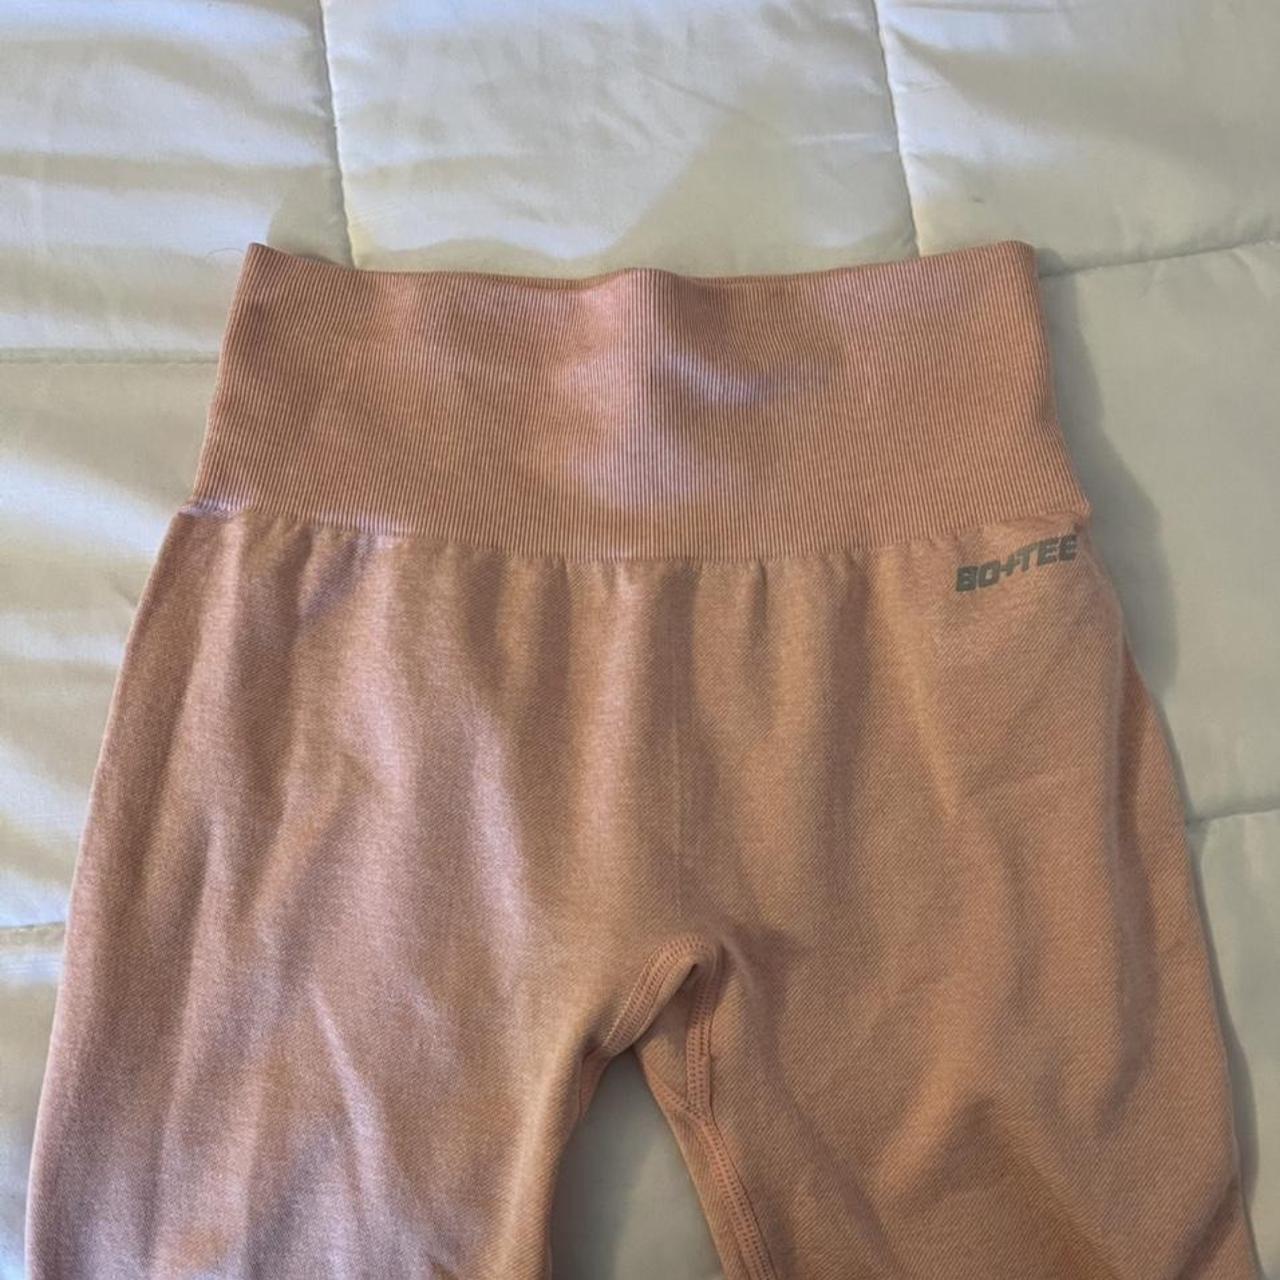 Bo + tee leggings in blush pink Size XS Only worn - Depop